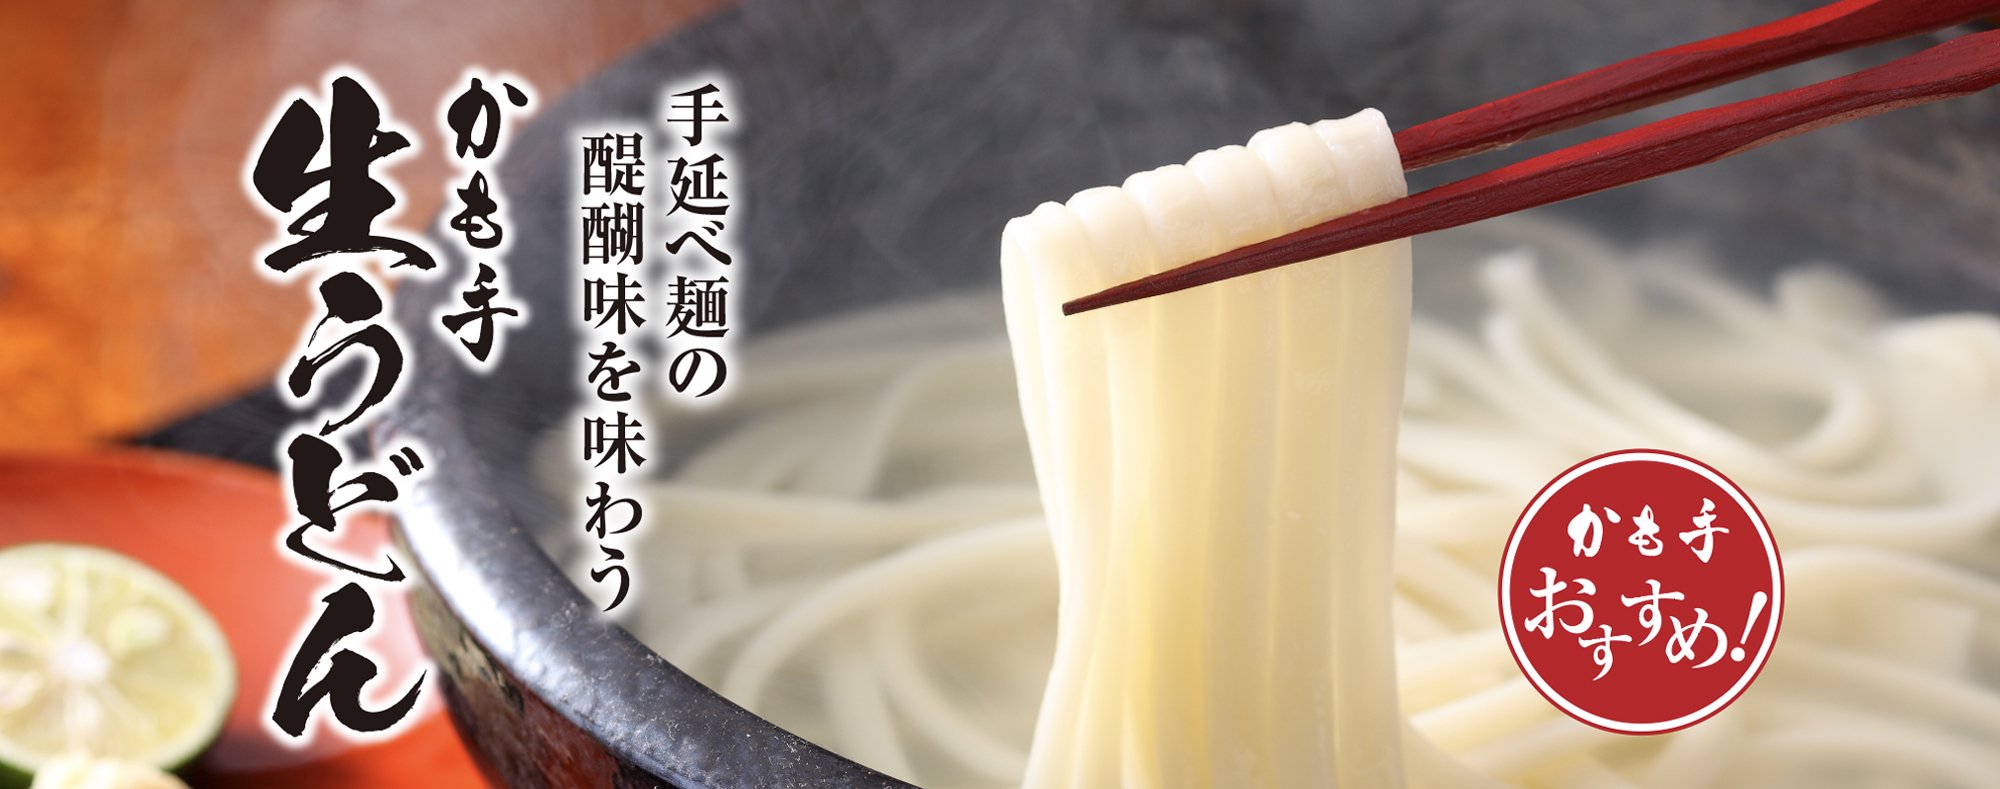 かも川手延素麺株式会社 公式通販サイト - うどん、そうめん、ひやむぎ